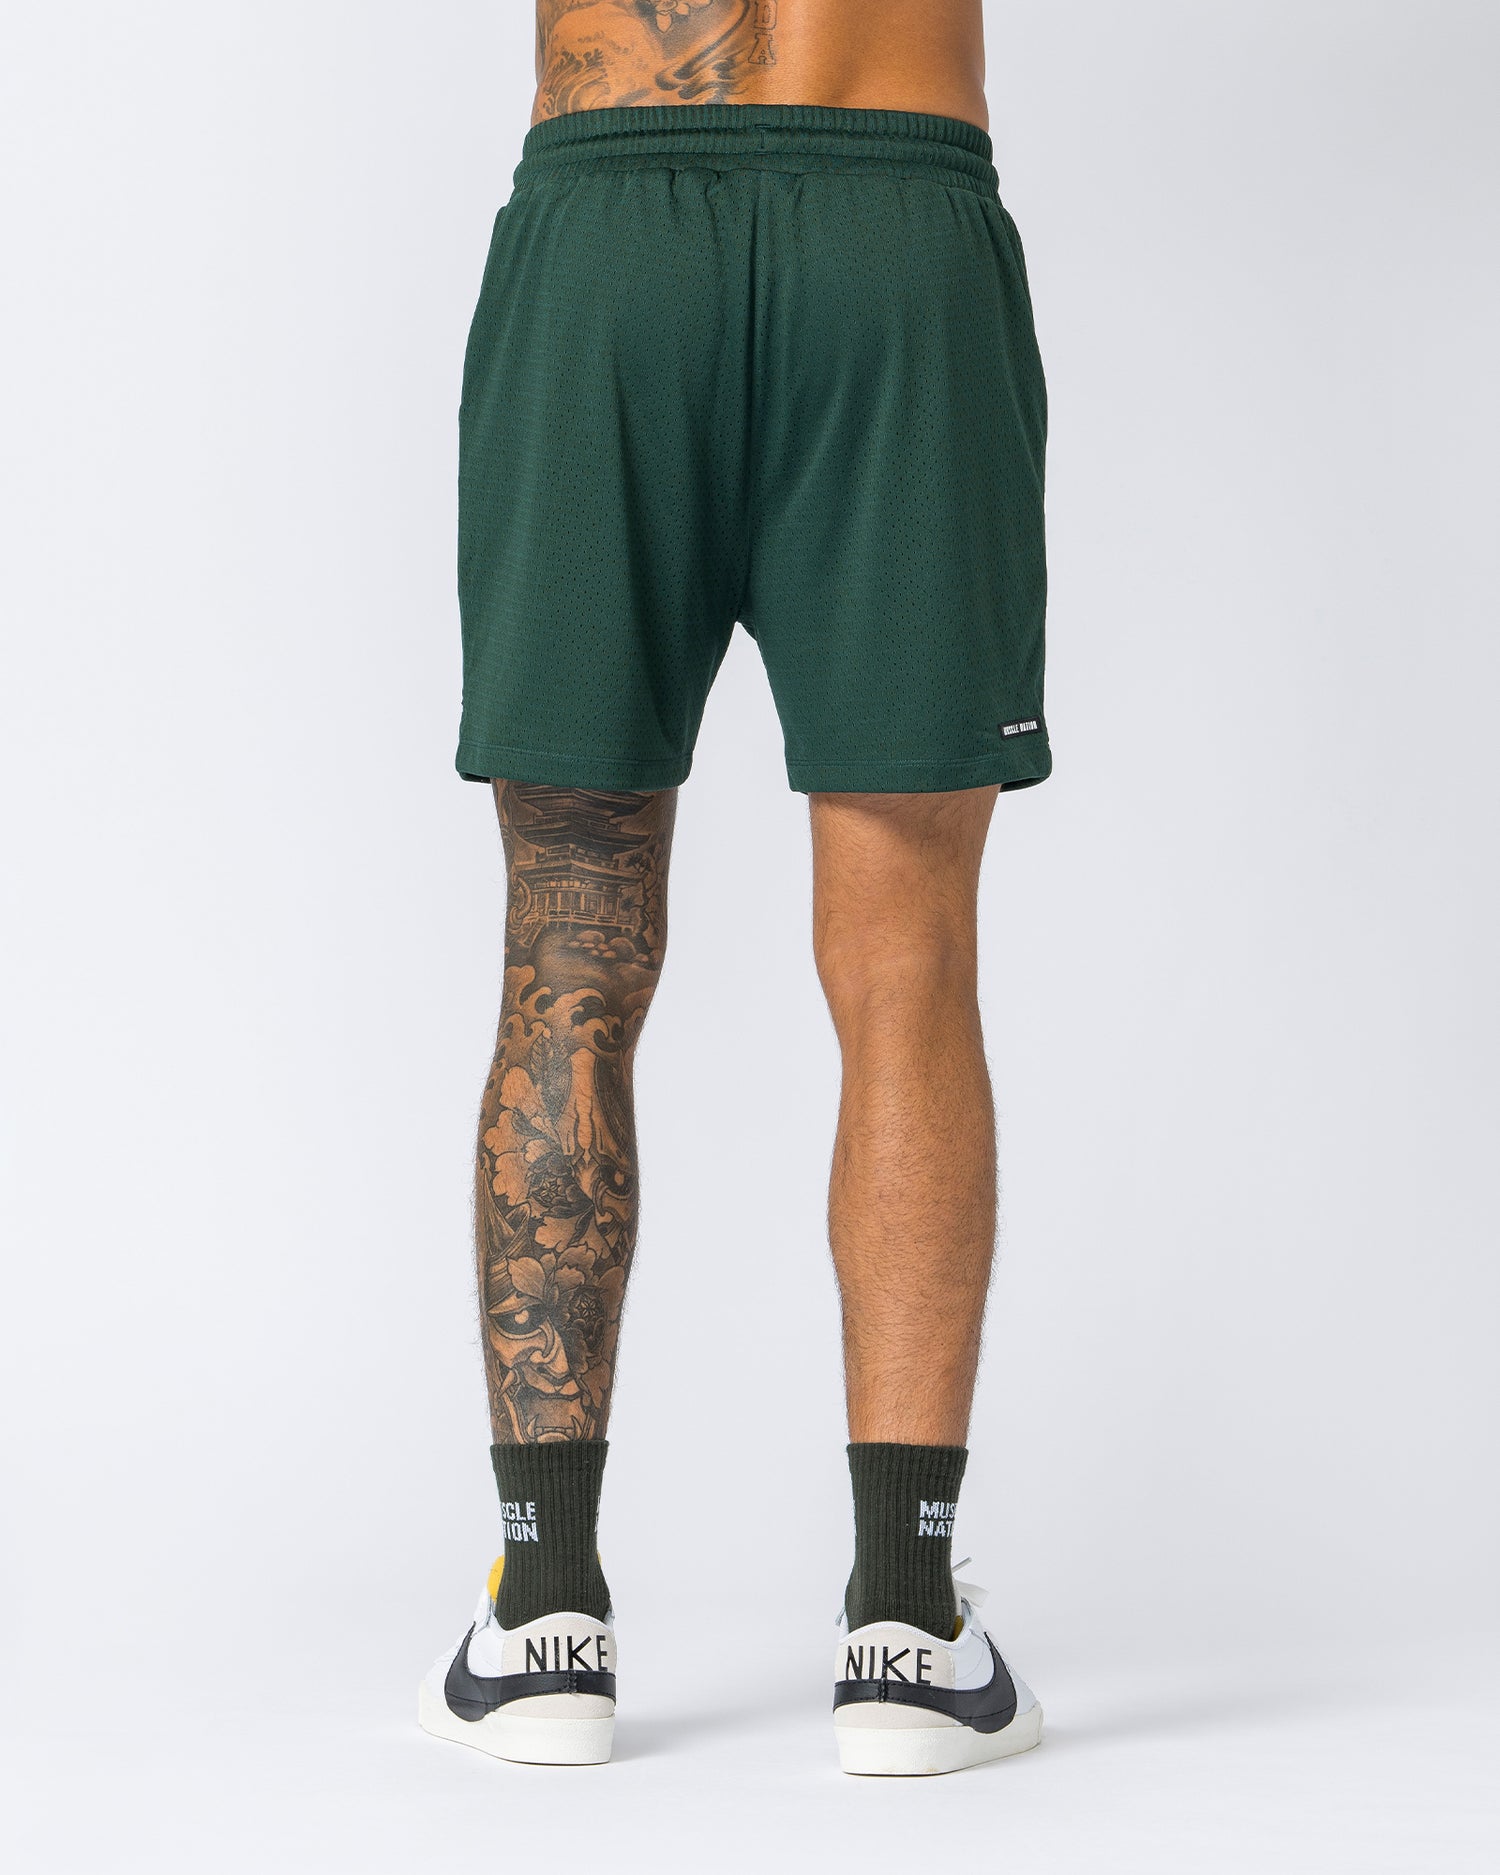 Lay Up 5" Shorts - Sporting Green